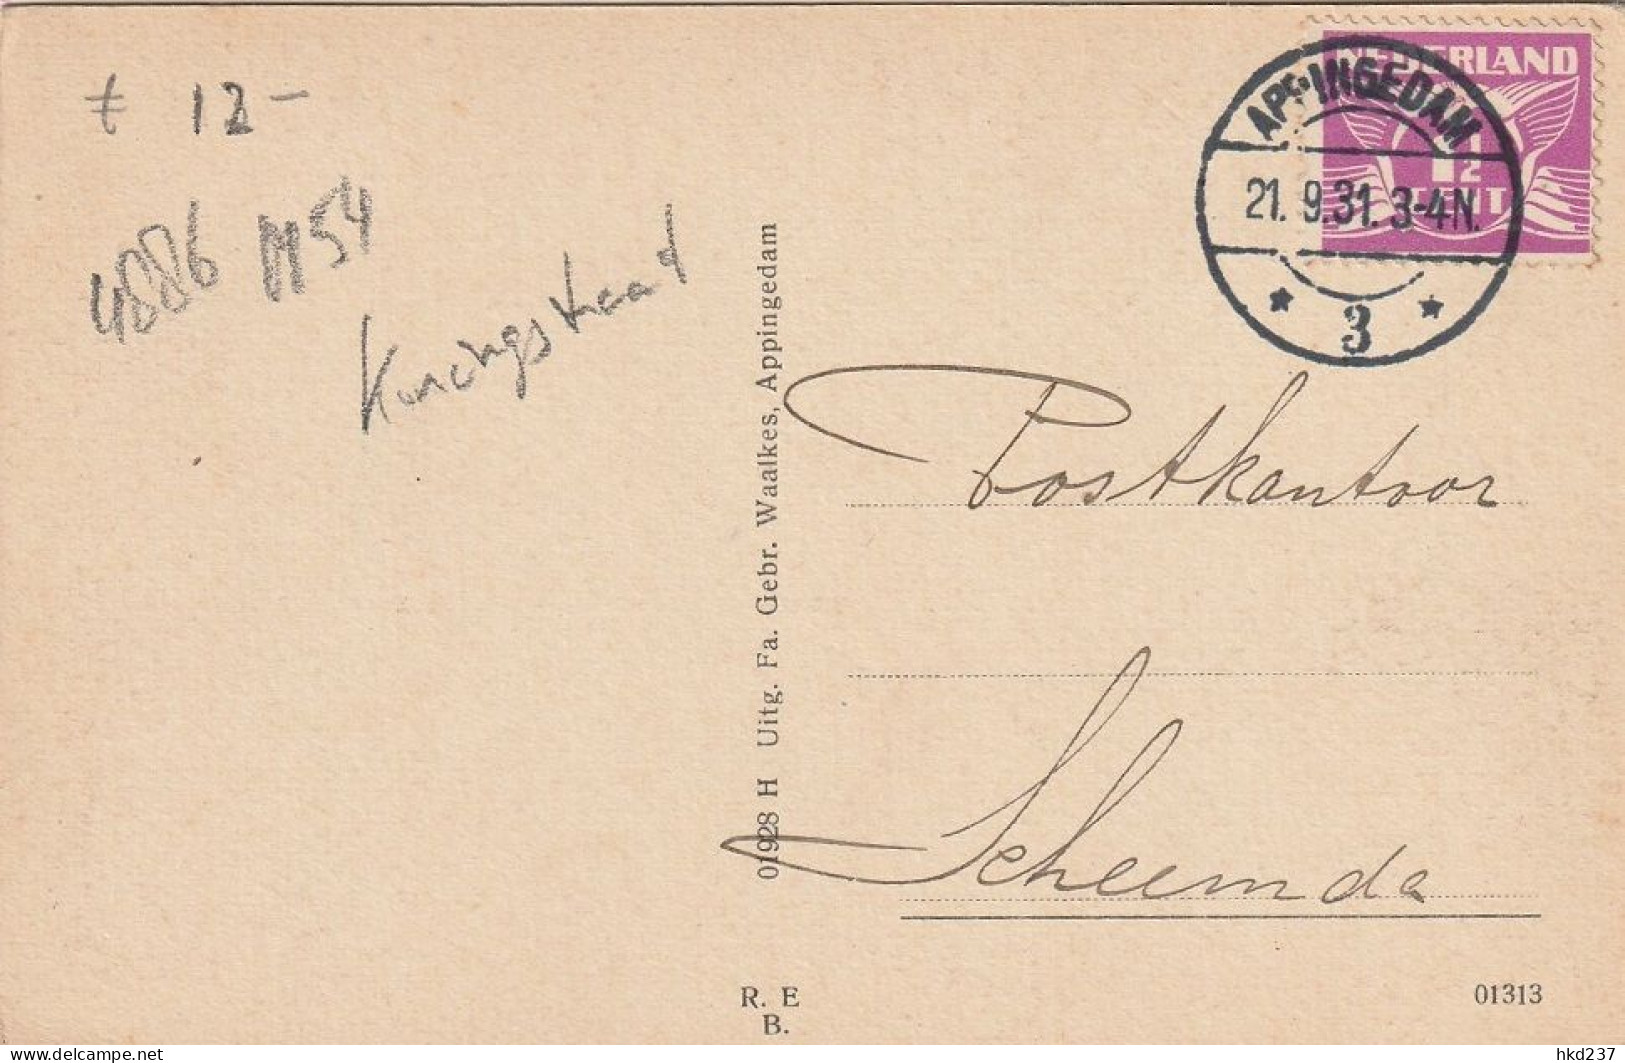 Appingedam Postkantoor Levendig Oude Vrachtwagen # 1931    4886 - Appingedam